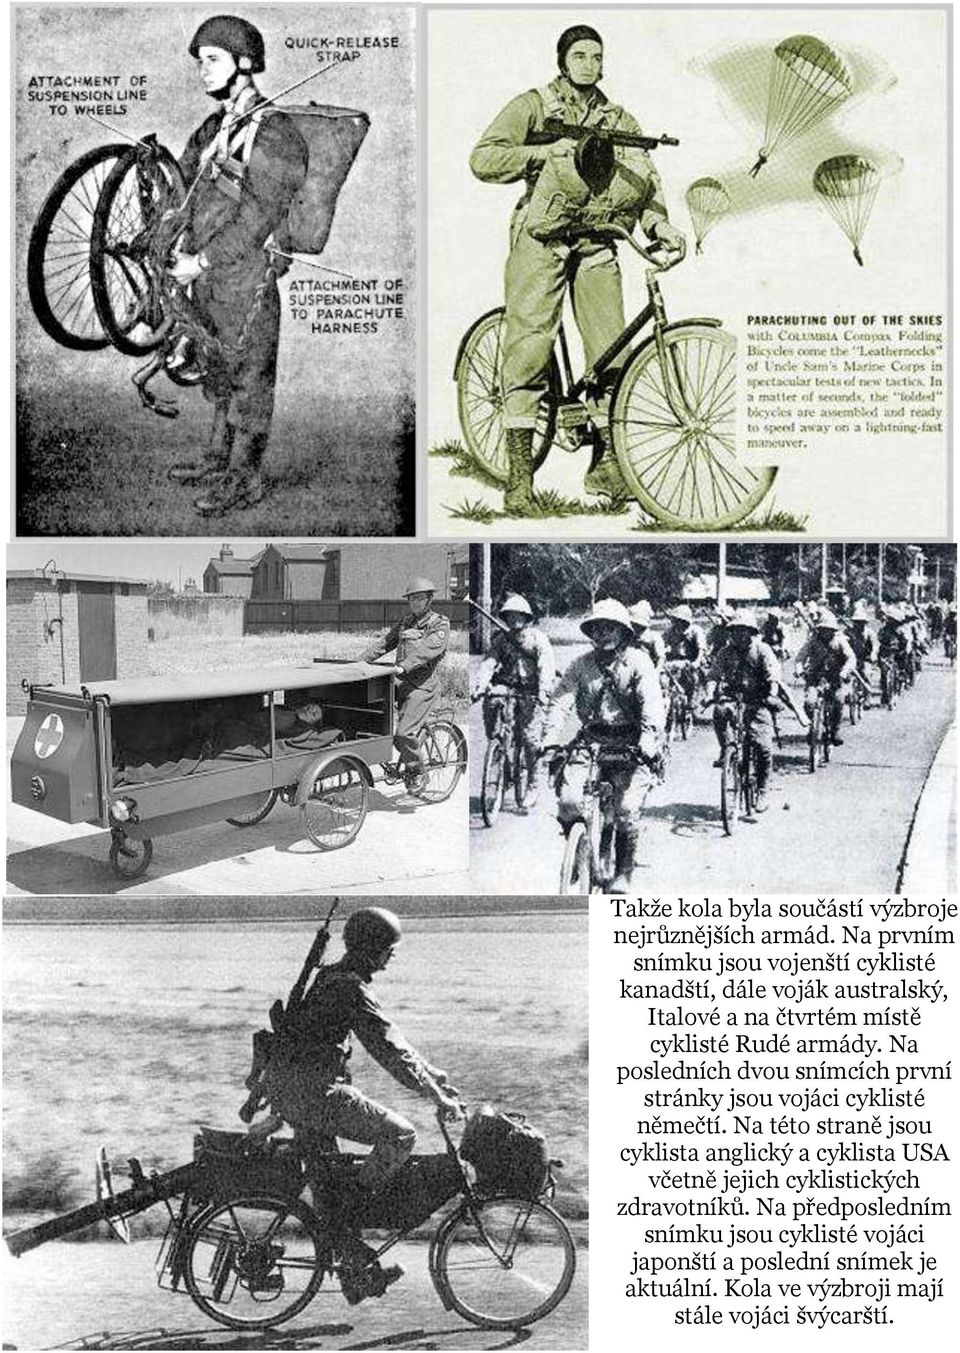 armády. Na posledních dvou snímcích první stránky jsou vojáci cyklisté němečtí.